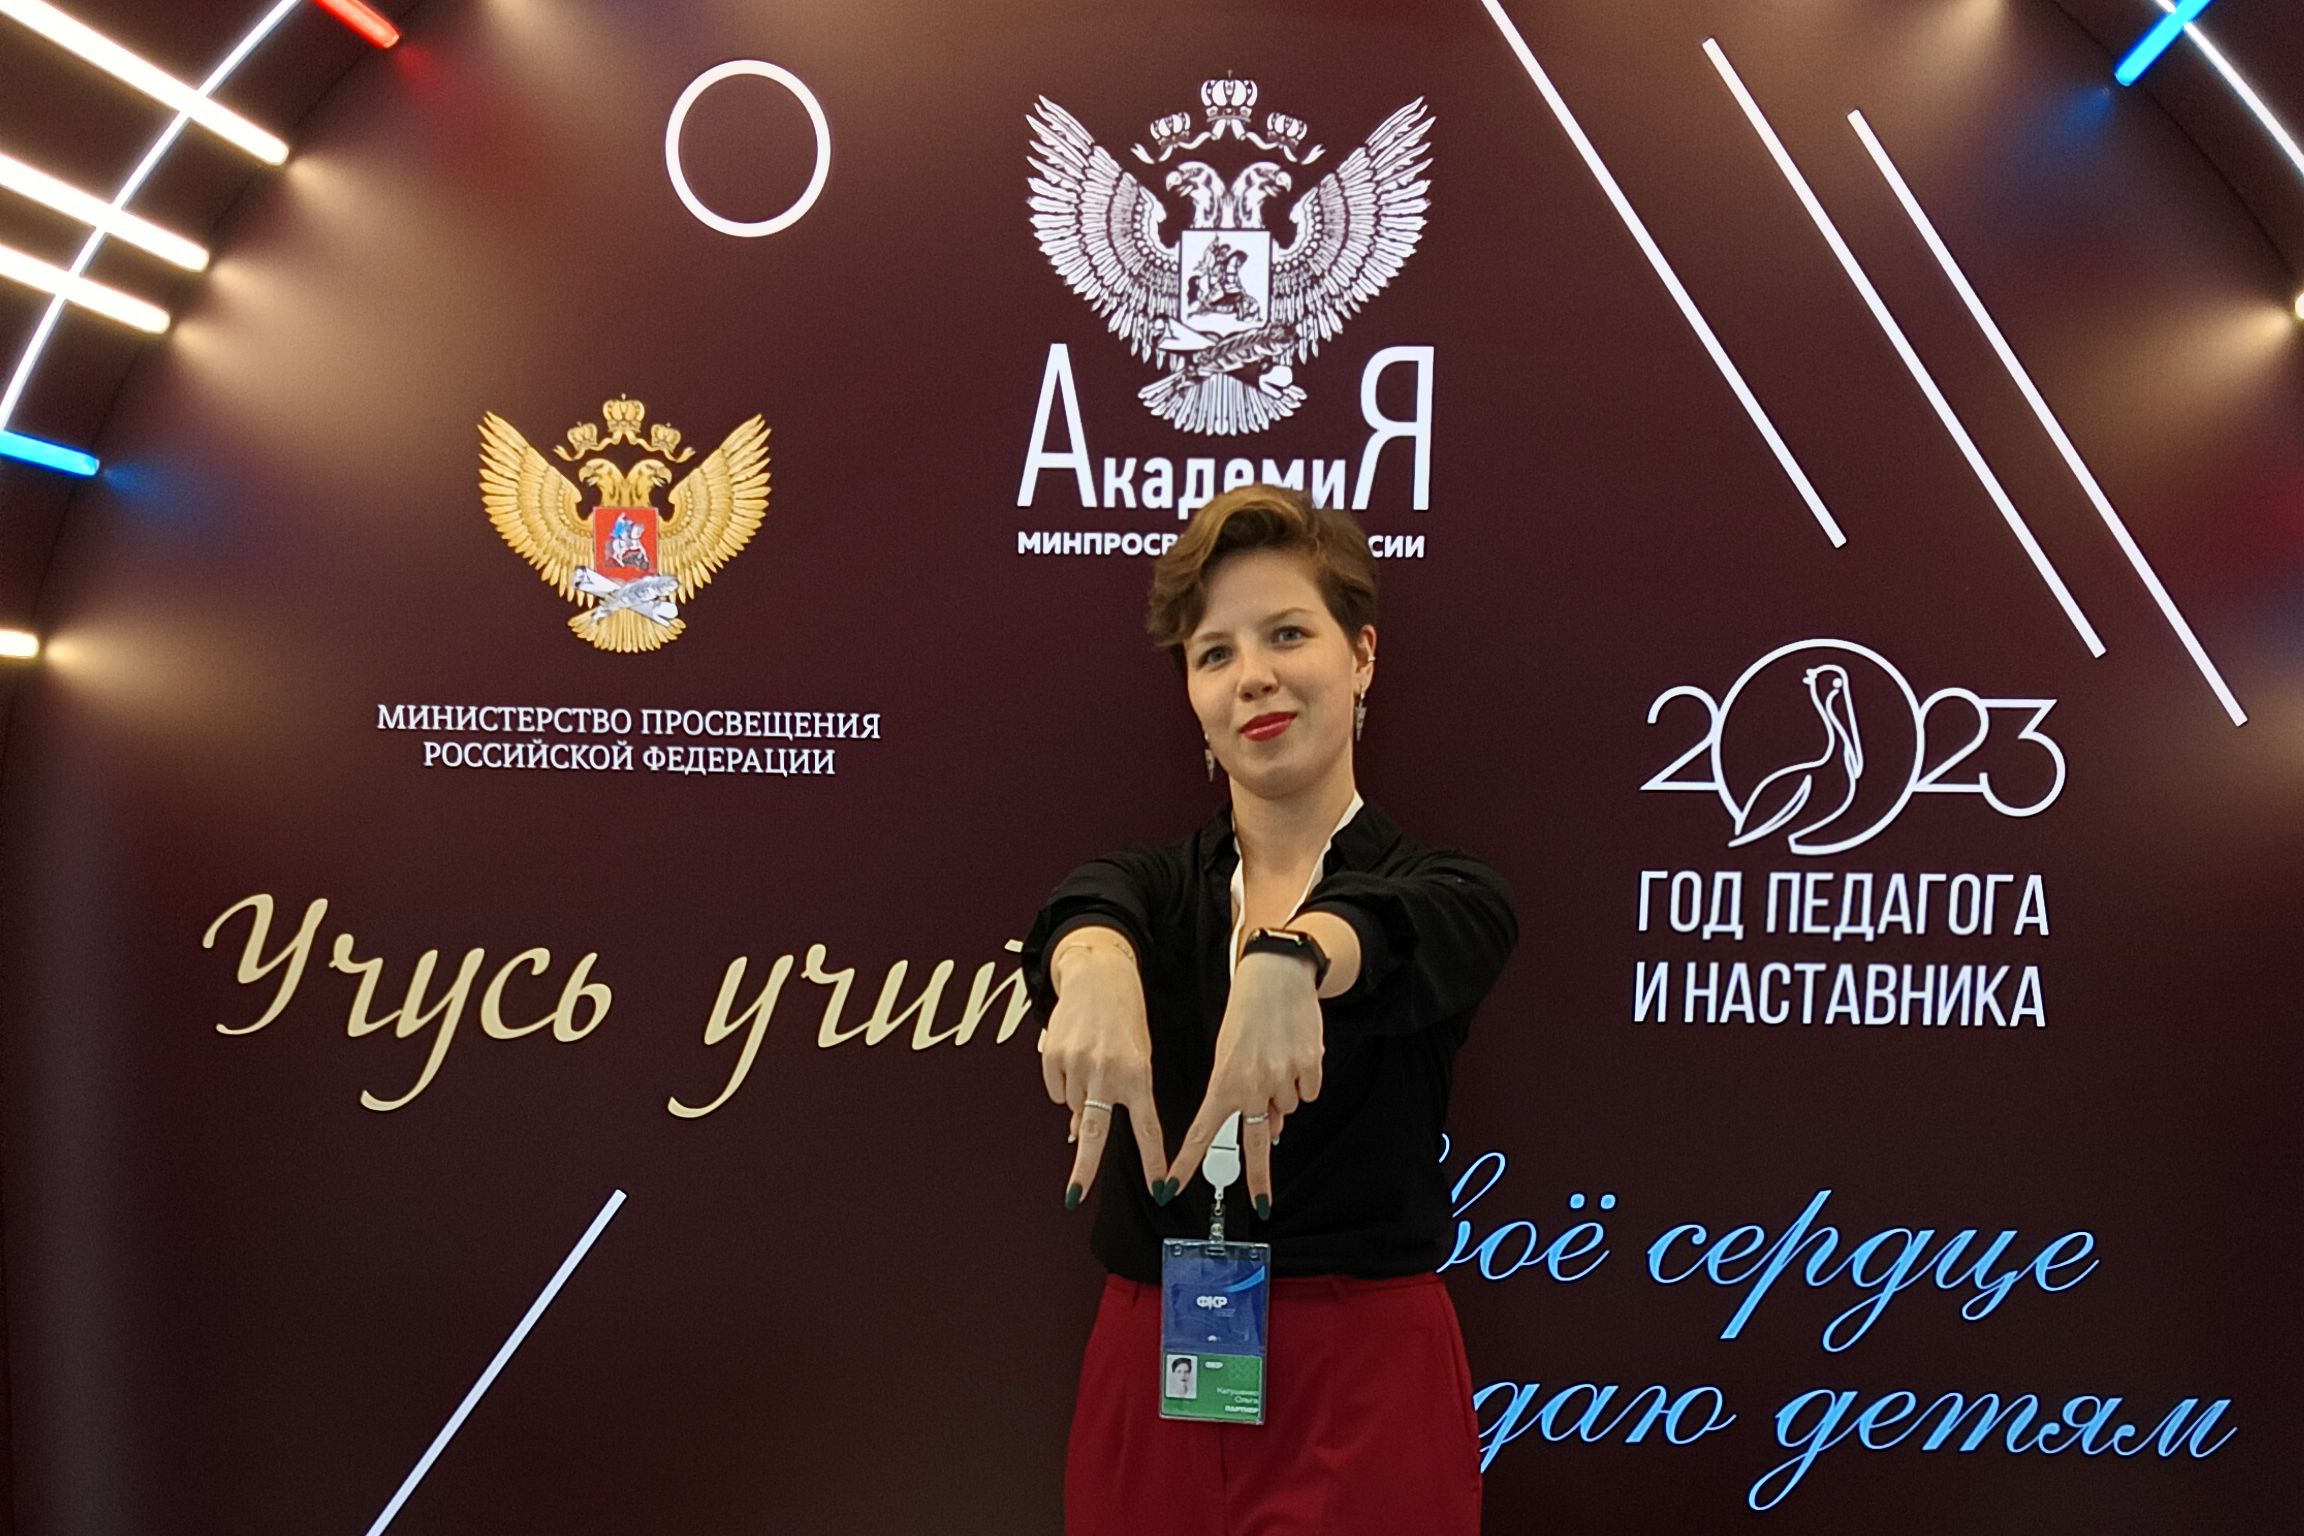 Педагог Мининского выступила с докладом на Всероссийском Форуме классных руководителей и наставников